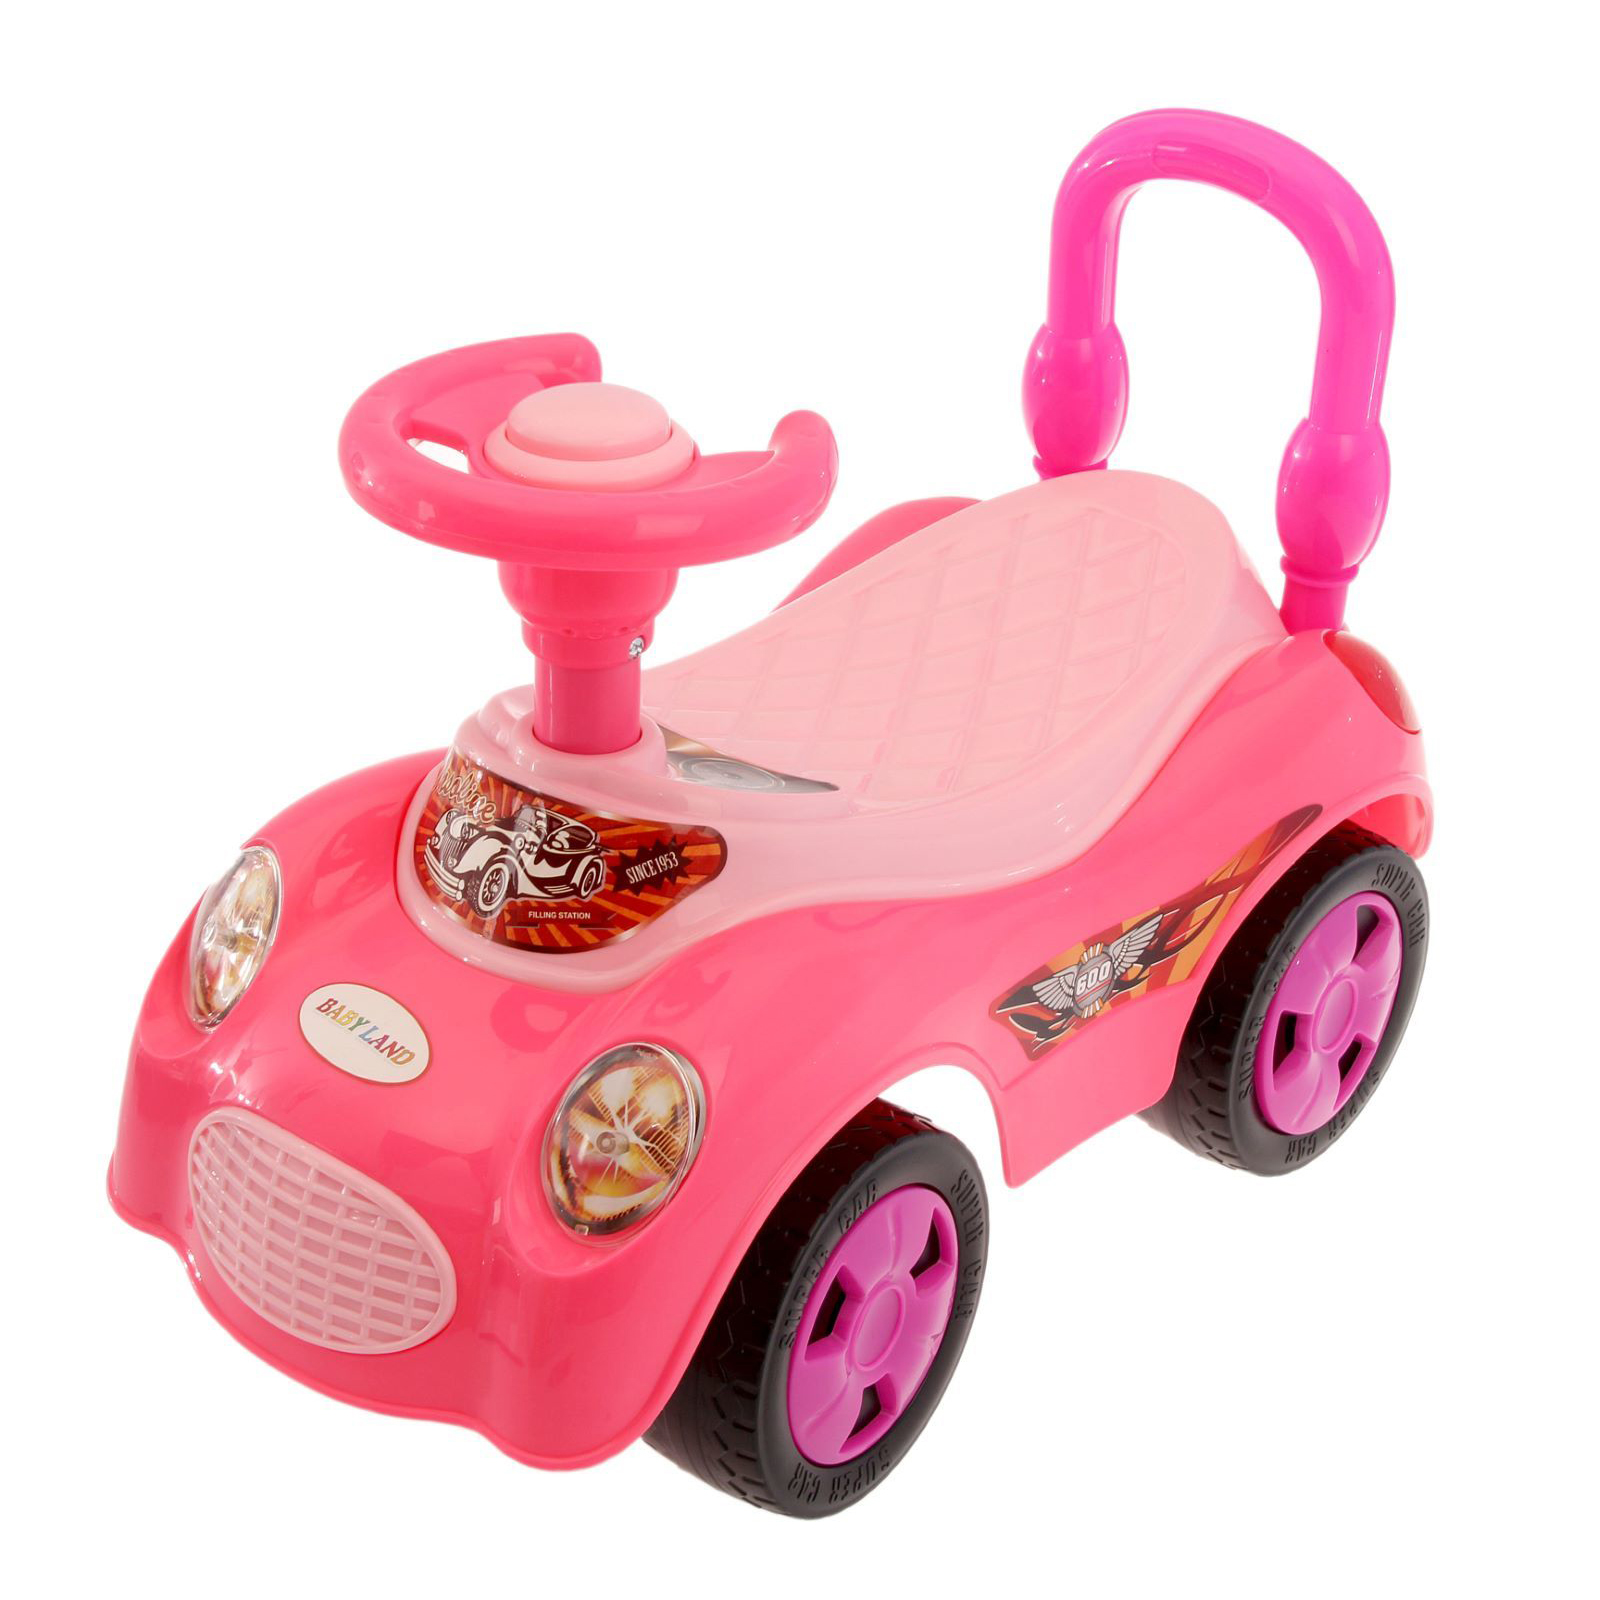 Толокар 1. Каталка-толокар Injusa Disney Princess. Машинки каталки для девочек принцесса кабриолет. Каталка толокар для девочки 1 годик.